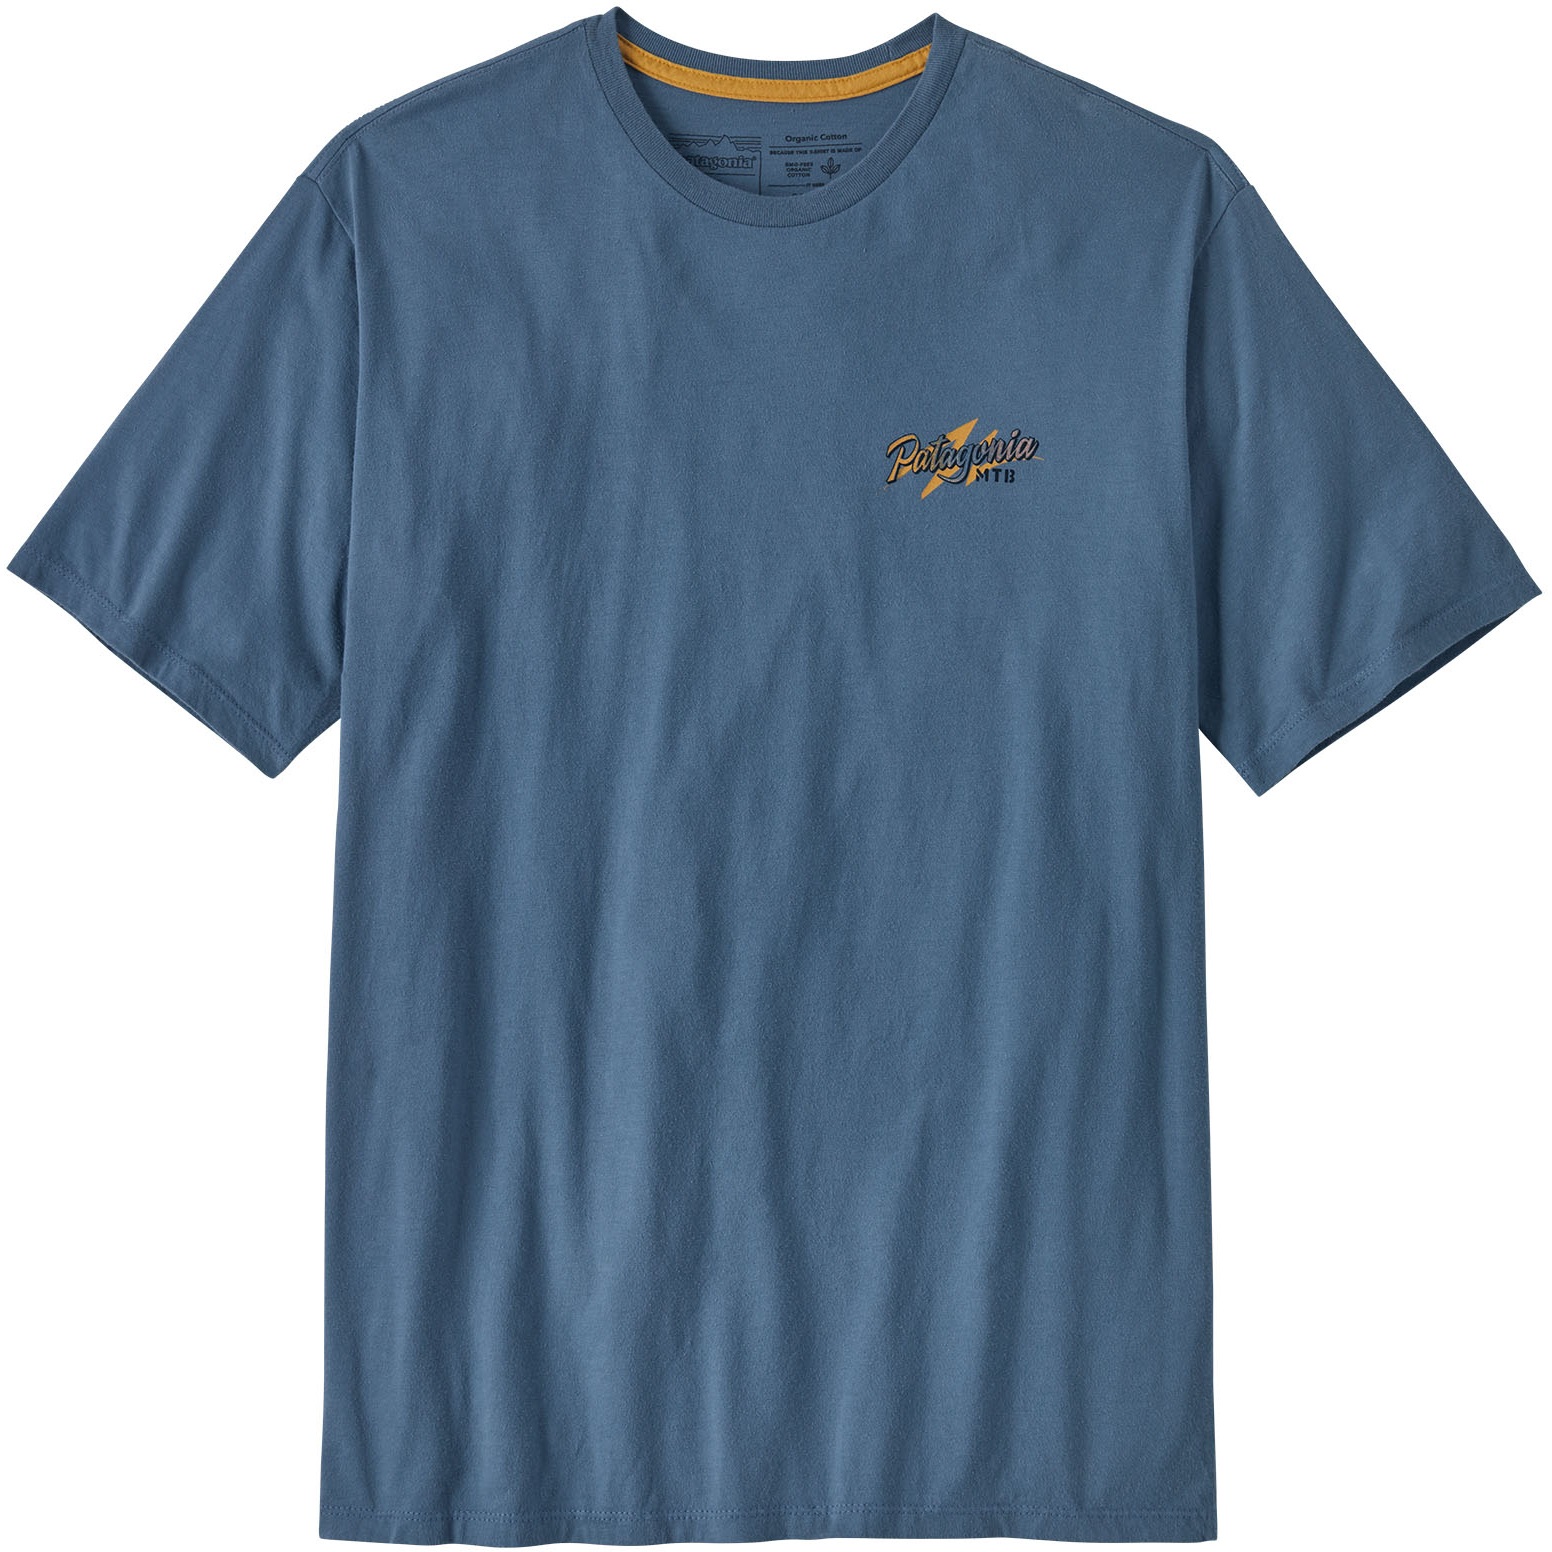 Produktbild von Patagonia Trail Hound Organic T-Shirt Herren - Utility Blue